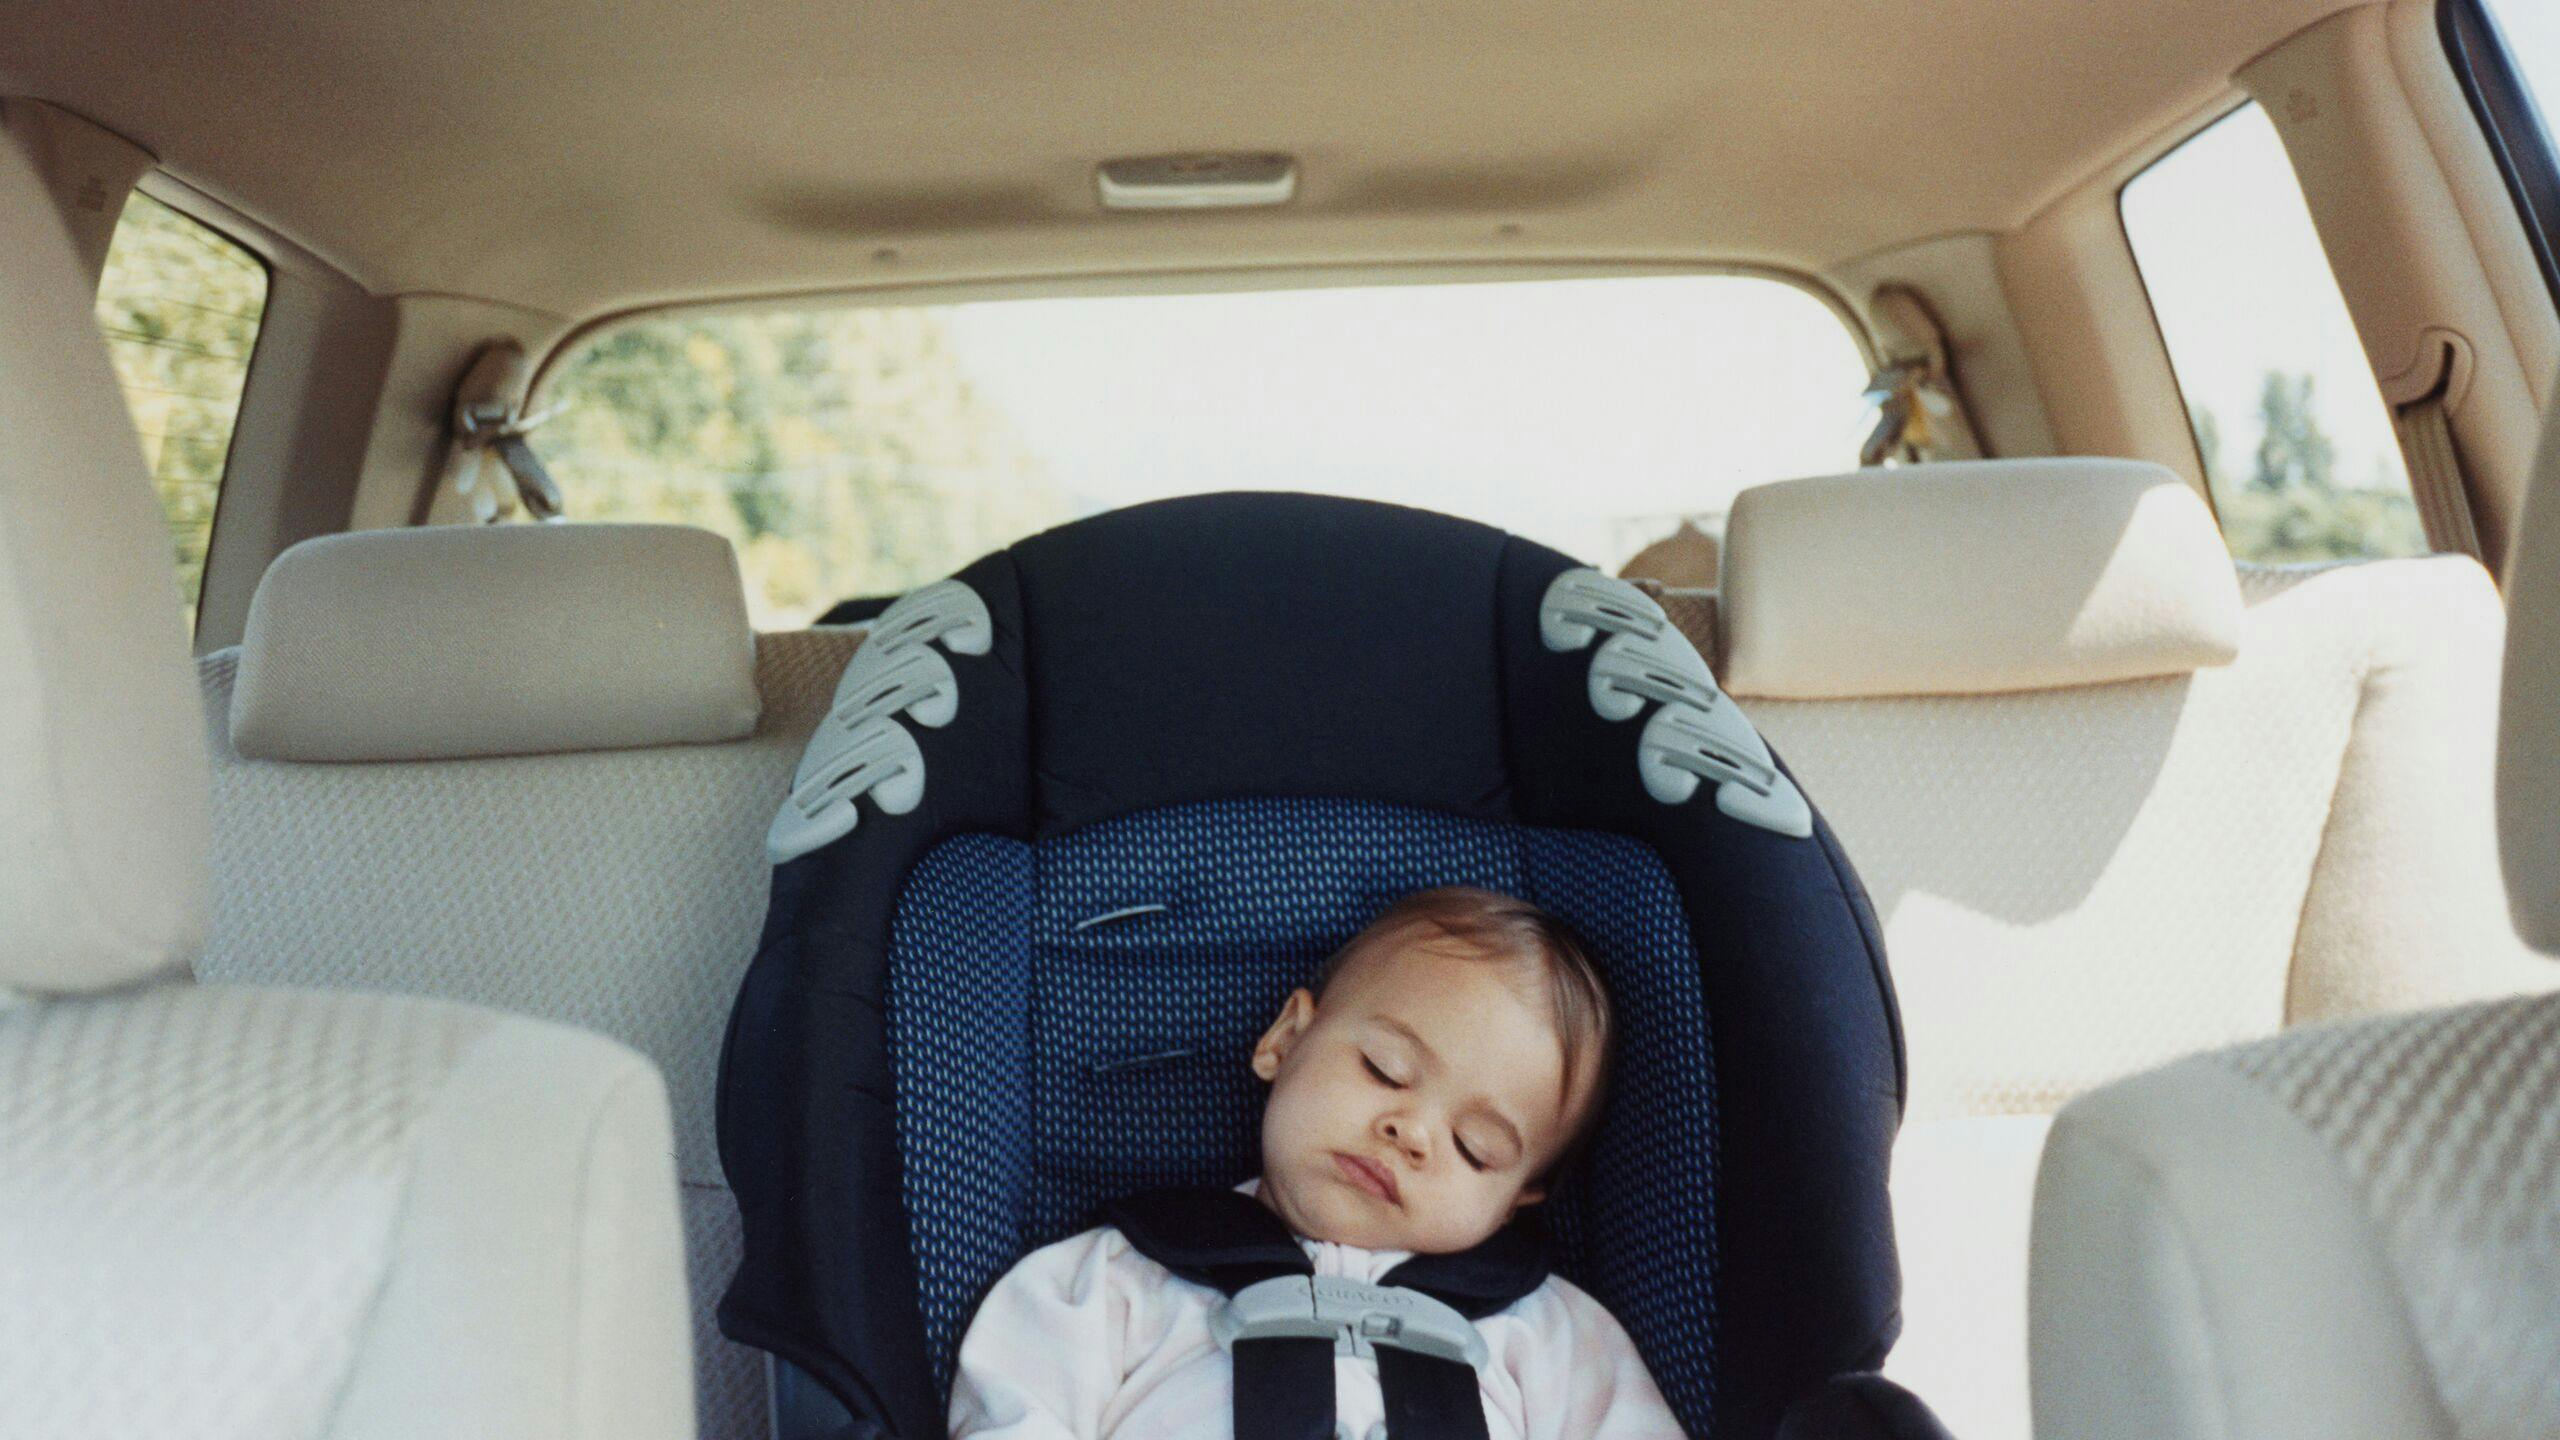 AXA Luxembourg - Quelle position est la plus sûre pour votre enfant en voiture ?